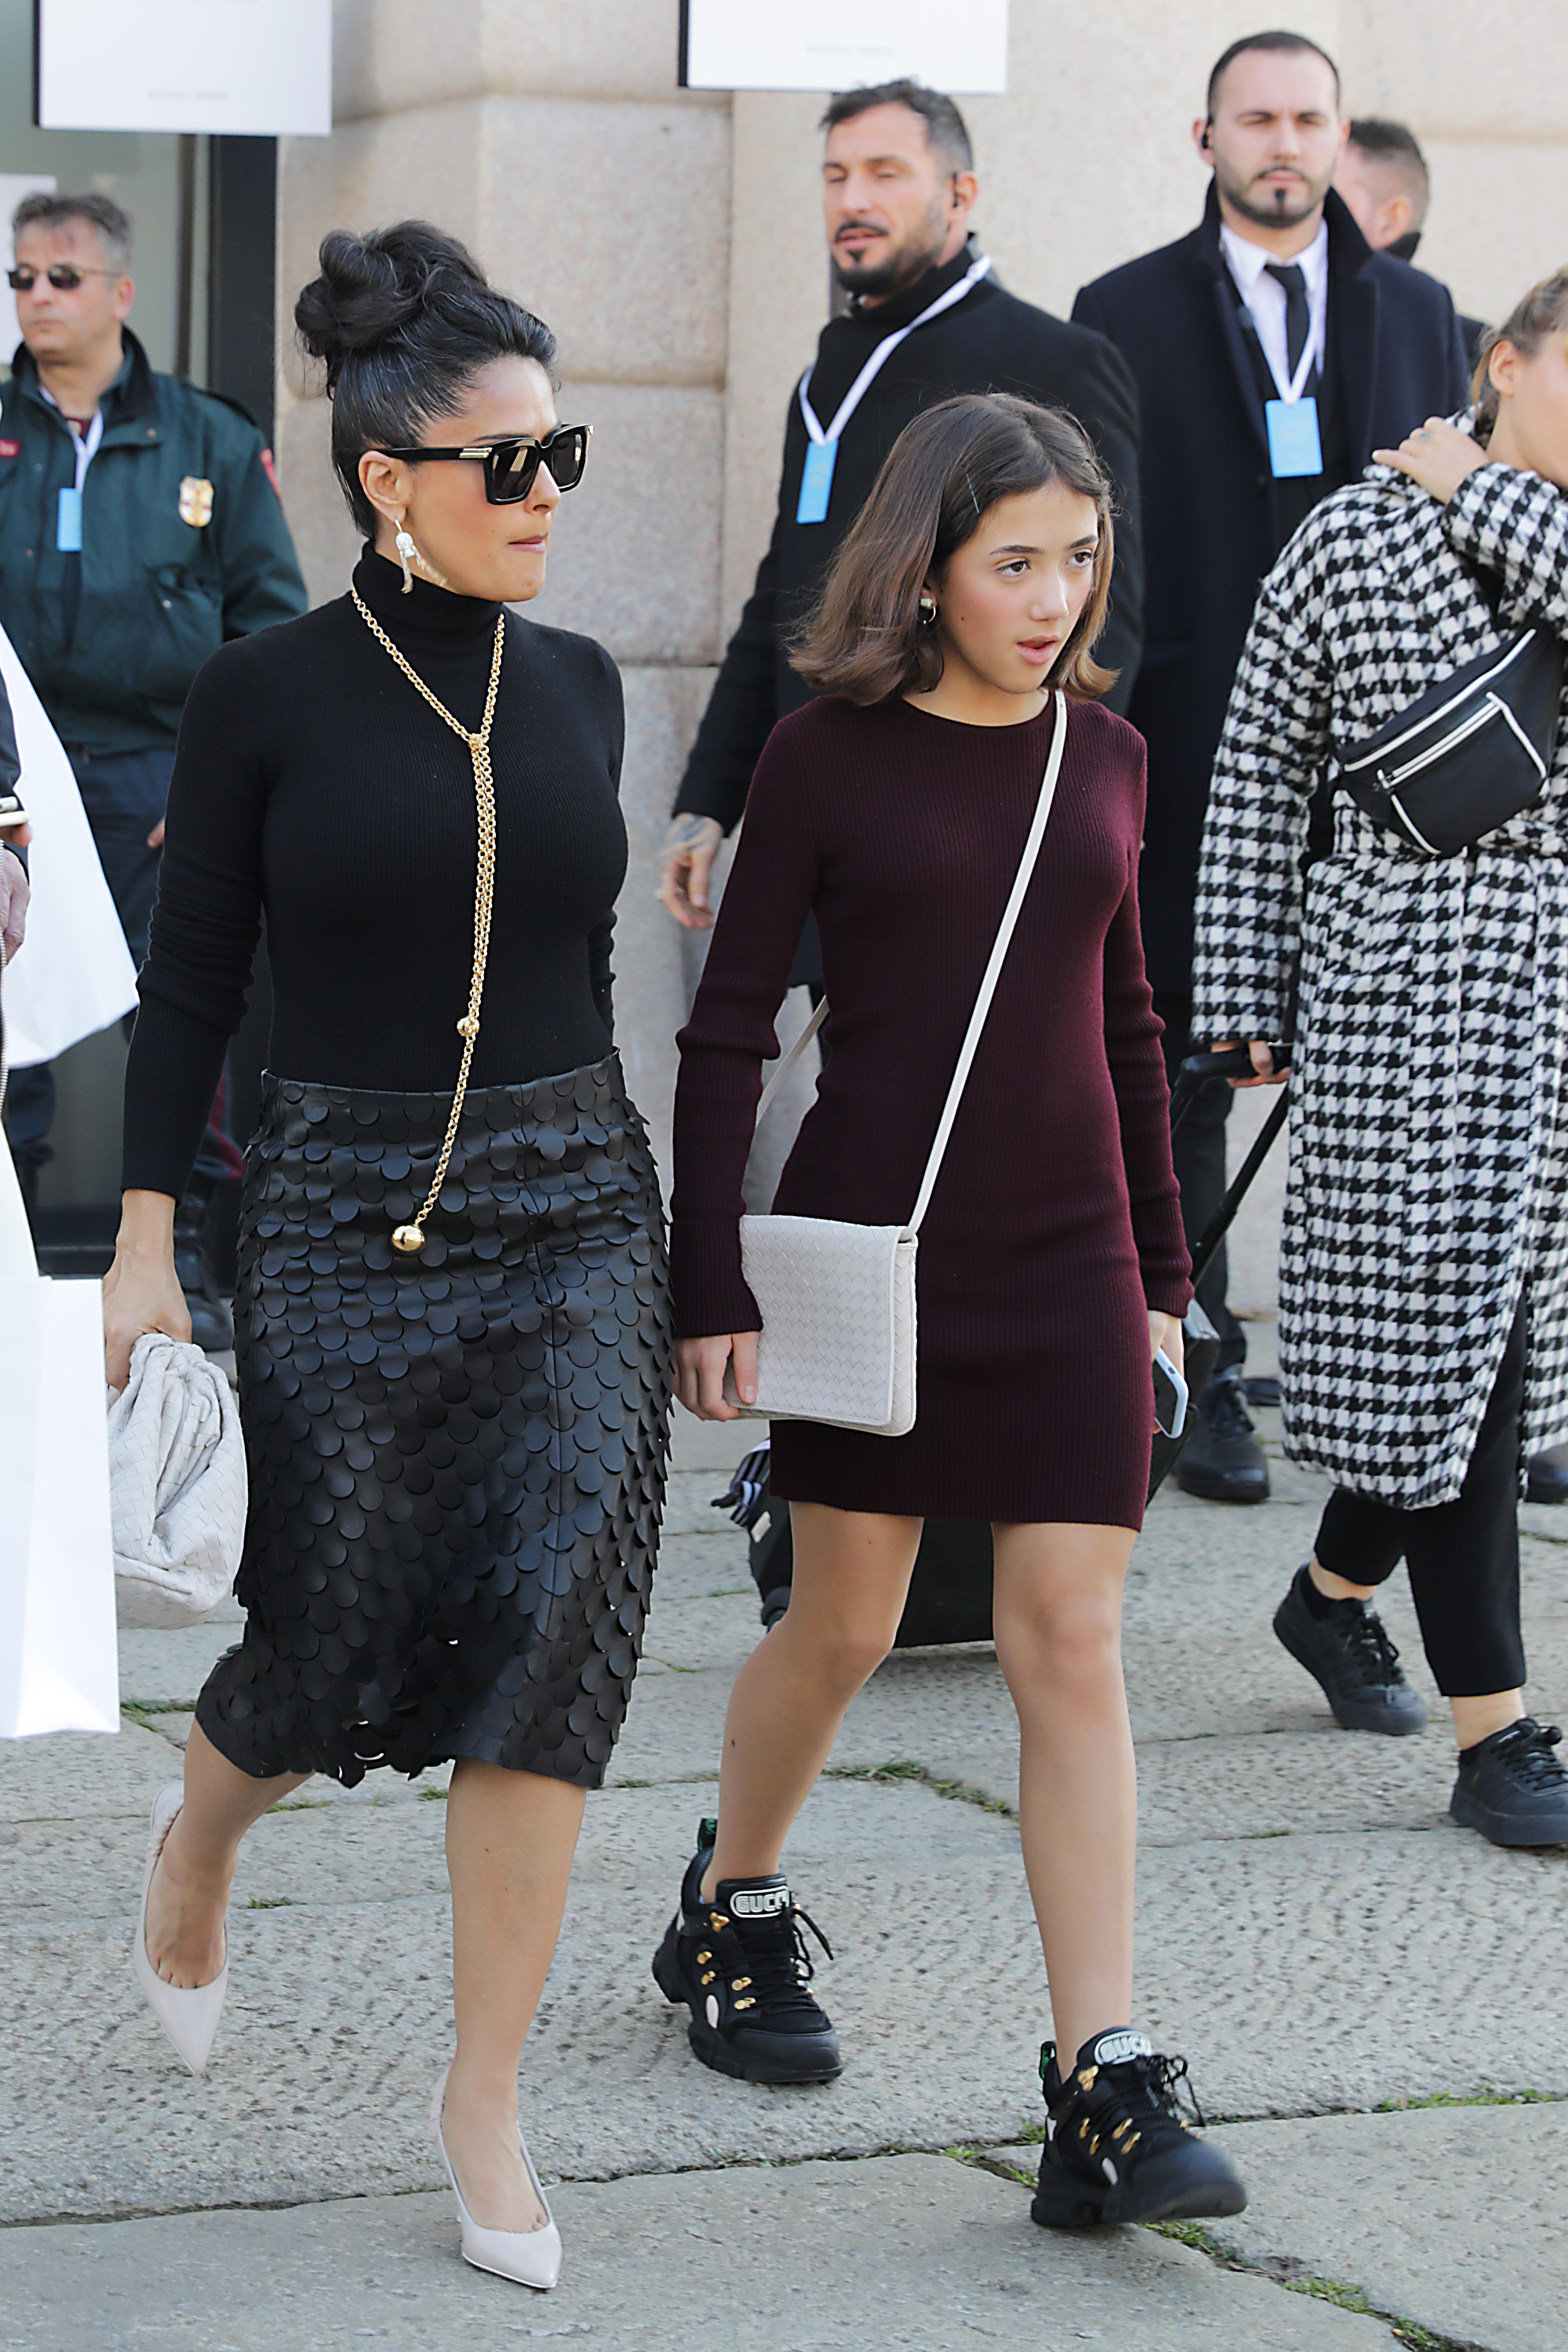 Salma Hayek brings her 11yearold daughter to Milan Fashion Week